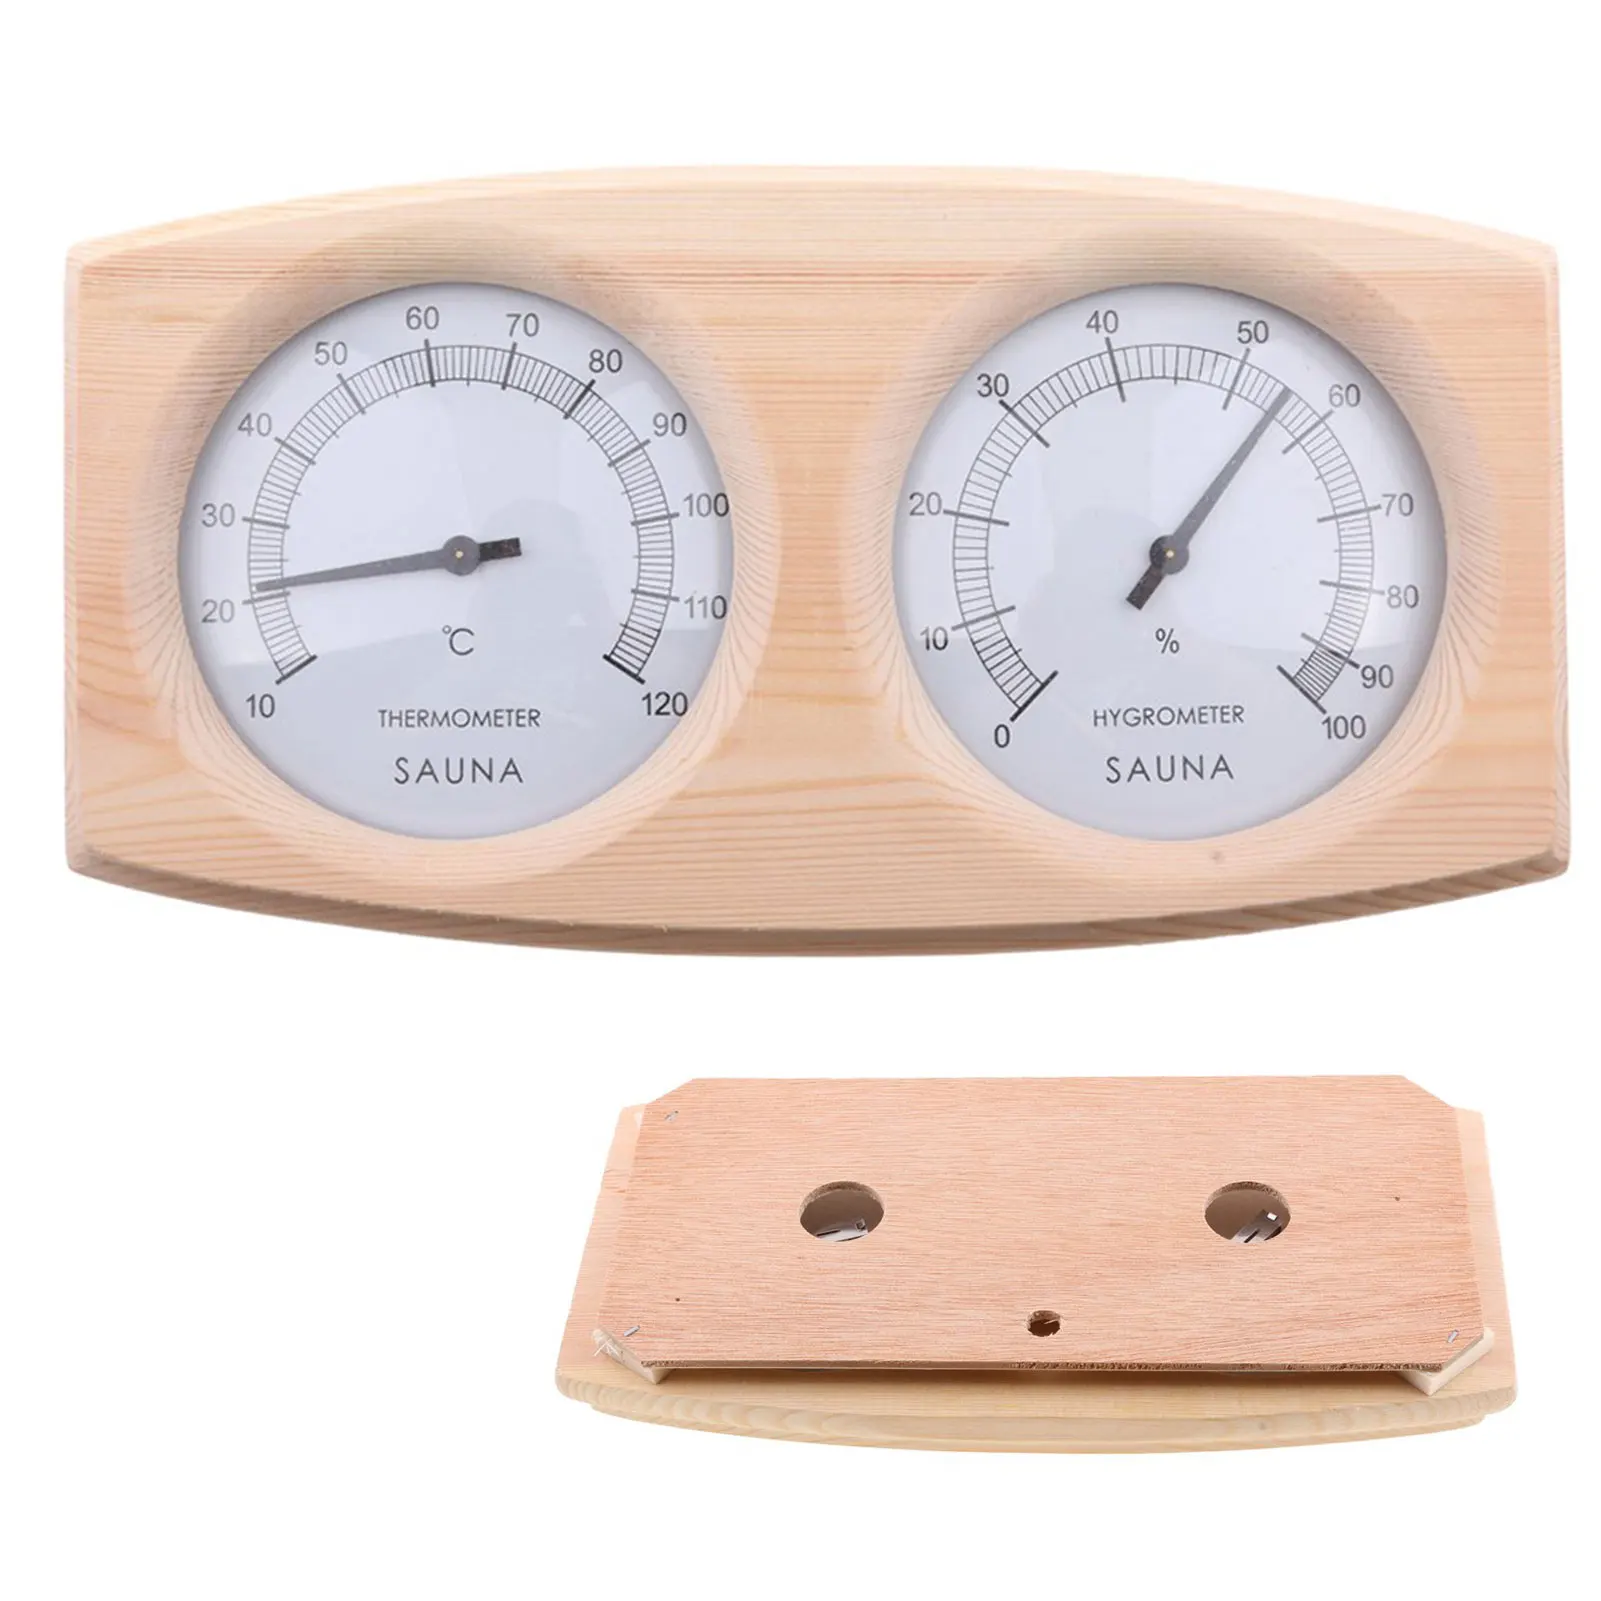 

Термометр-гигрометр для сауны из сосновой древесины 10C-120C, горизонтальные цифровые аксессуары для сауны, измерение температуры и влажности